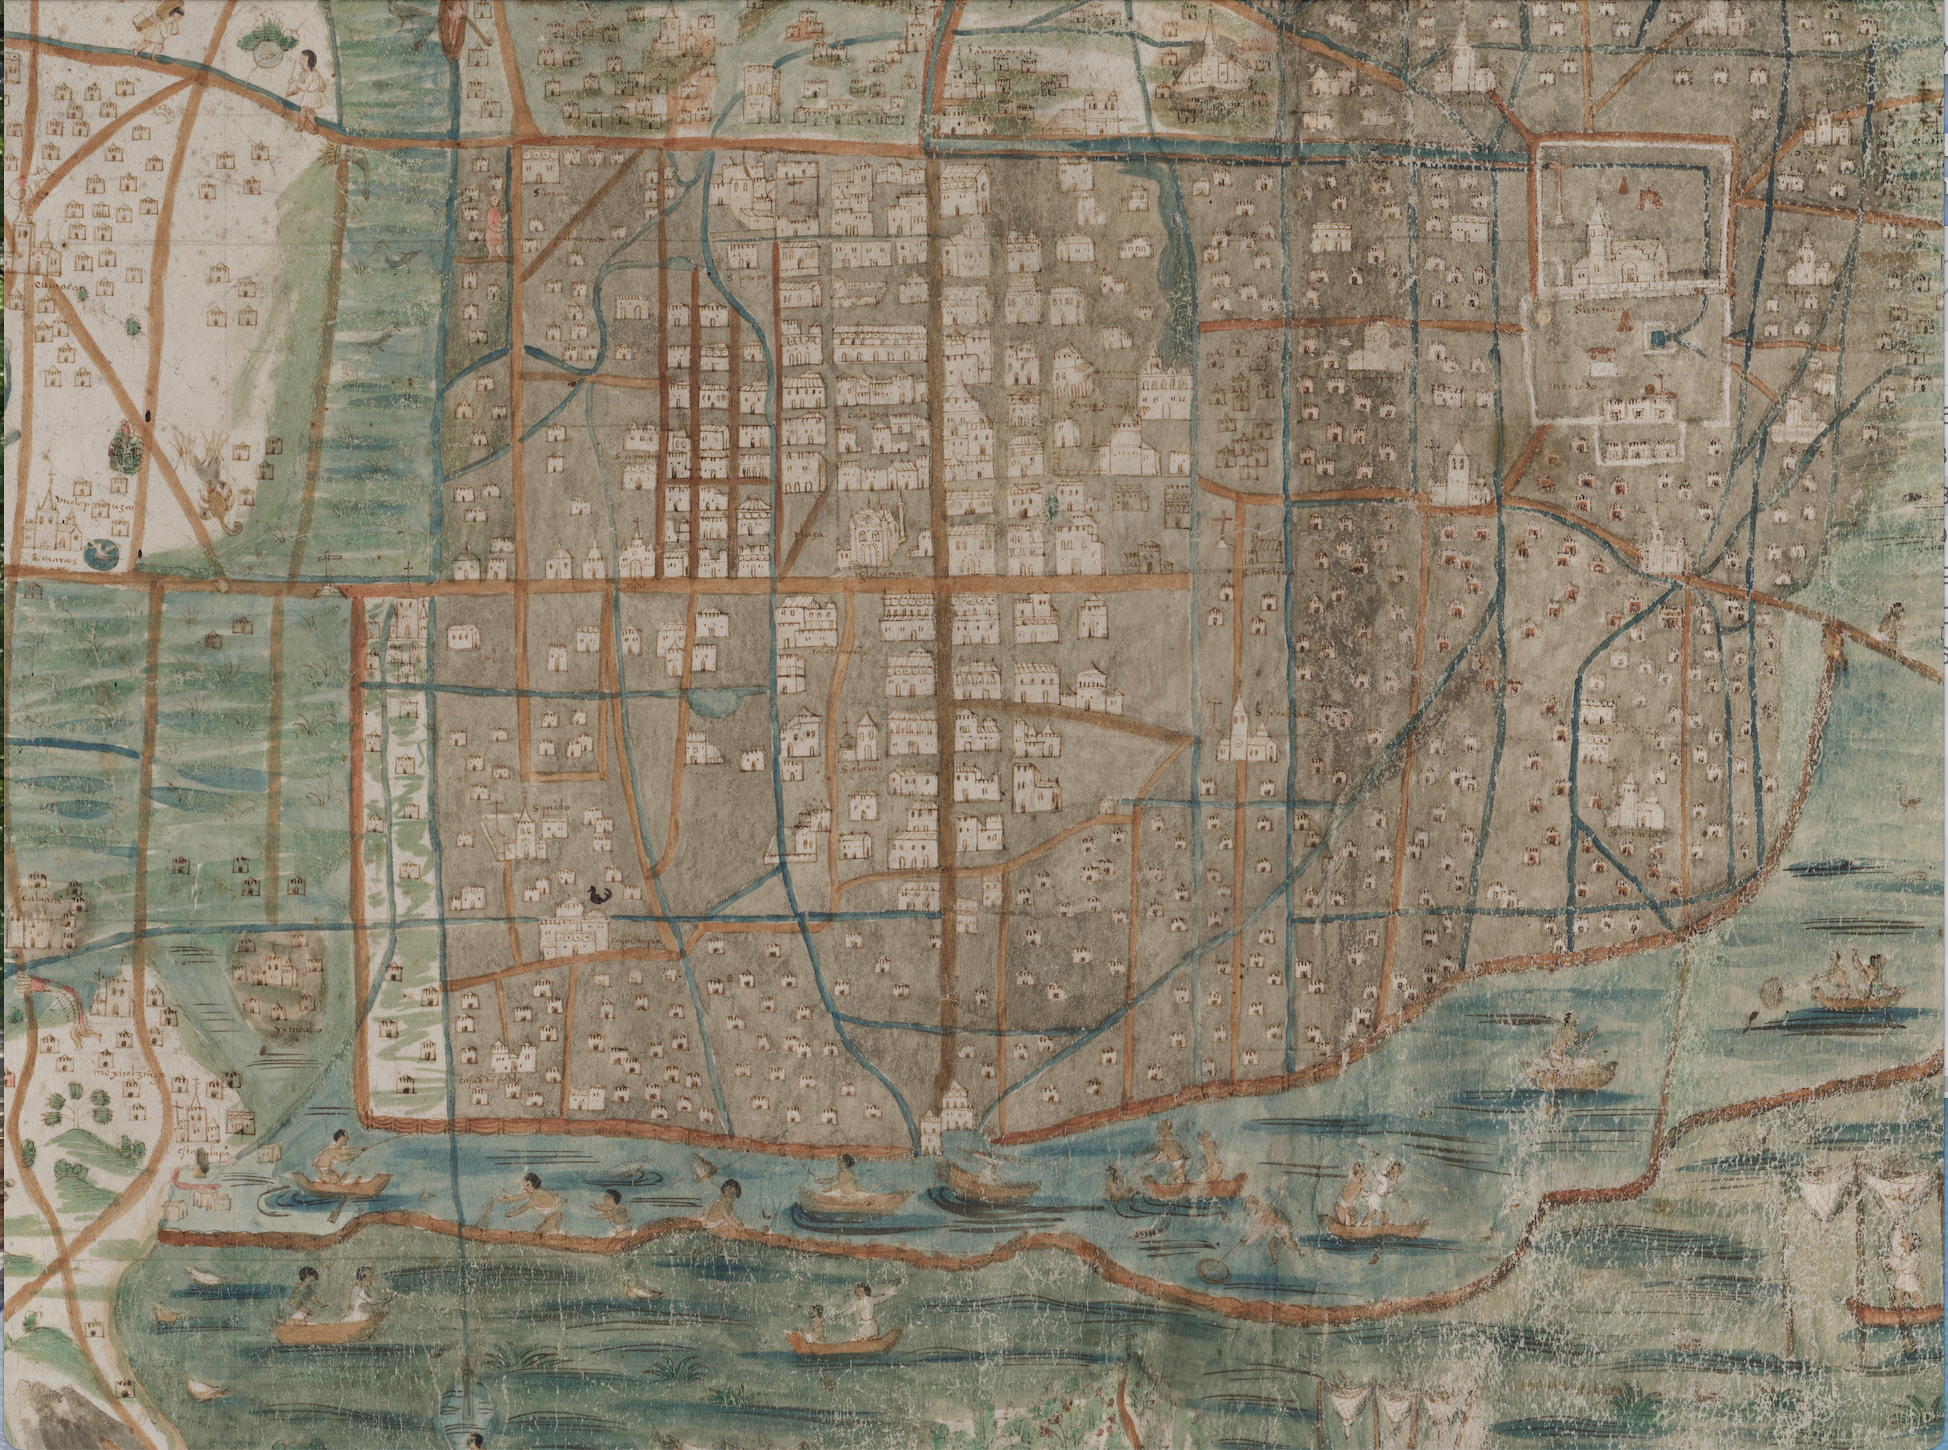 3. Fragmento del Mapa de Upsala, donde se observan los canales que atravesaban la primitiva Ciudad de México, y los restos de las obras hidráulicas de los mexicas, como el llamado albarradón de Ahuízotl